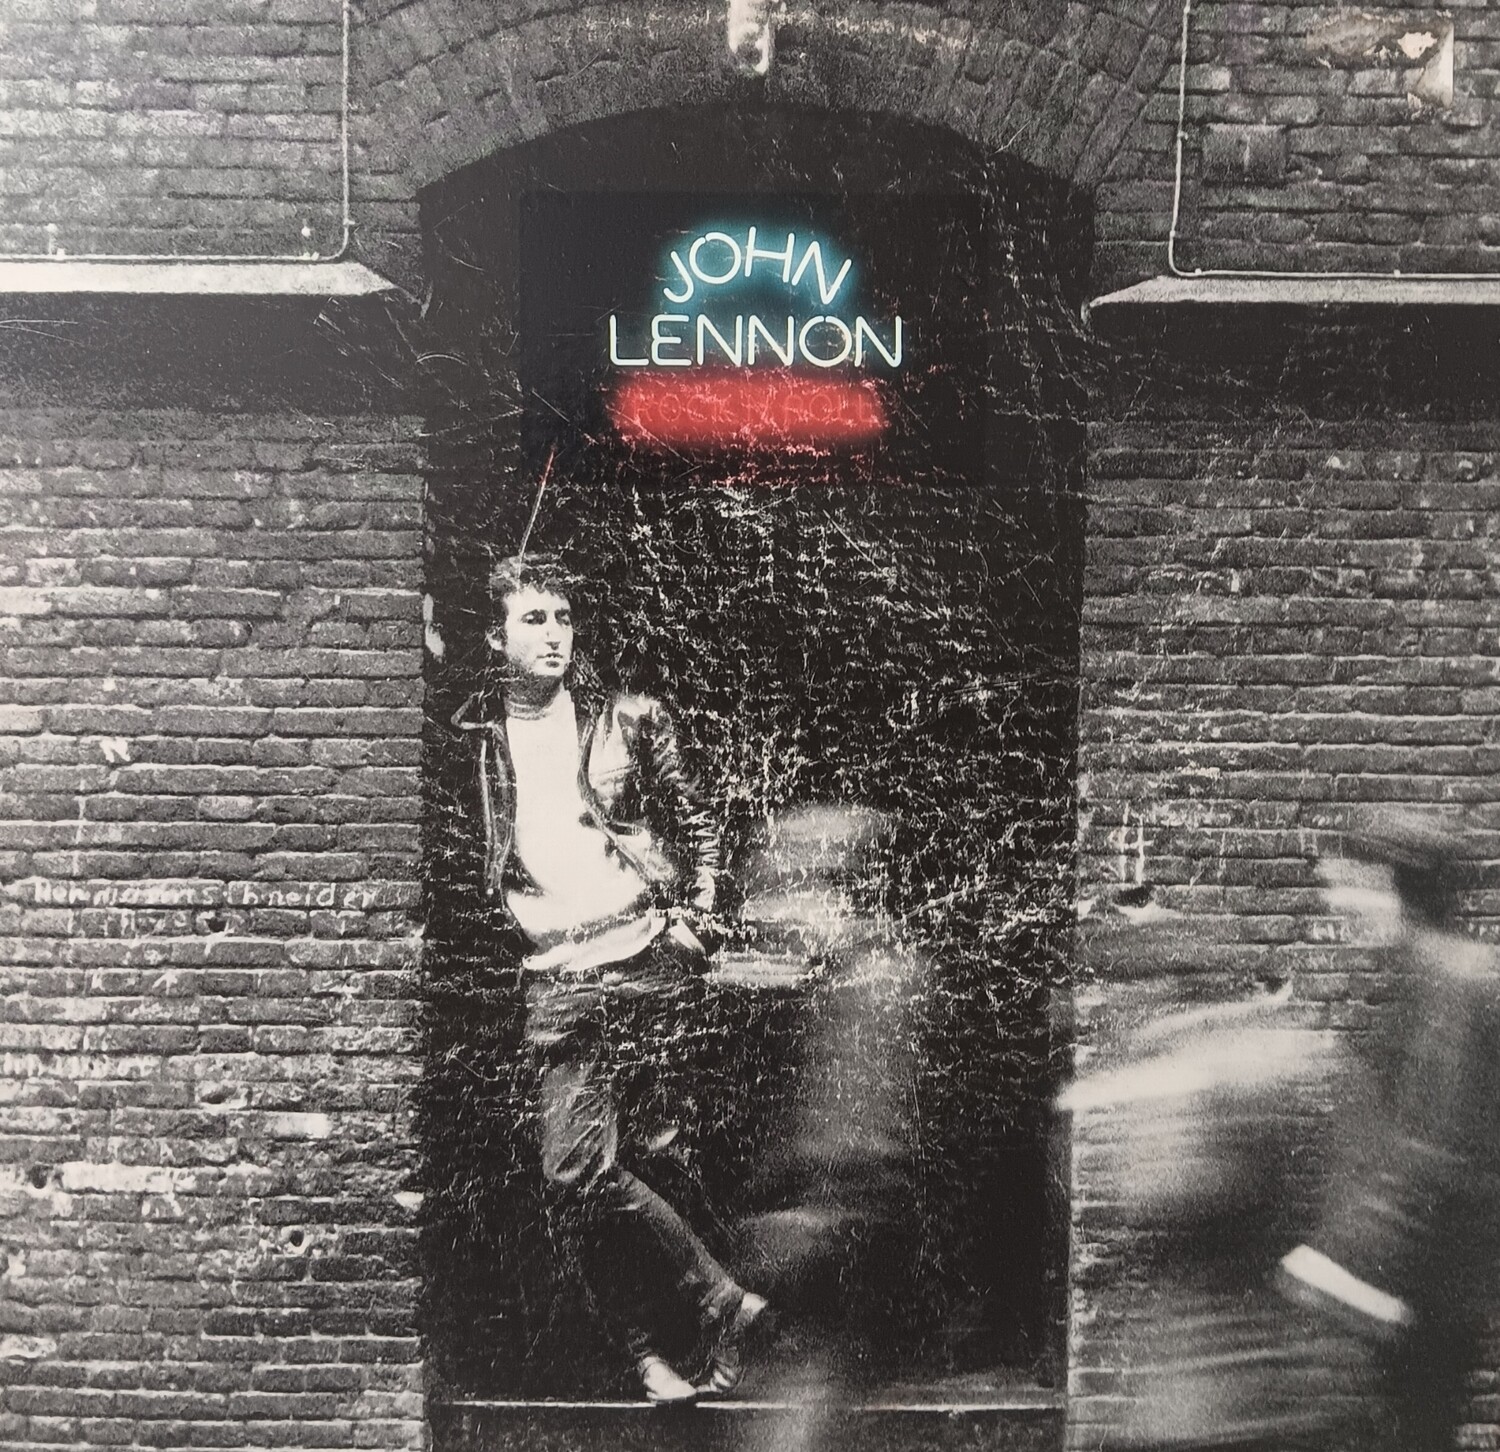 JOHN LENNON - Rock n roll